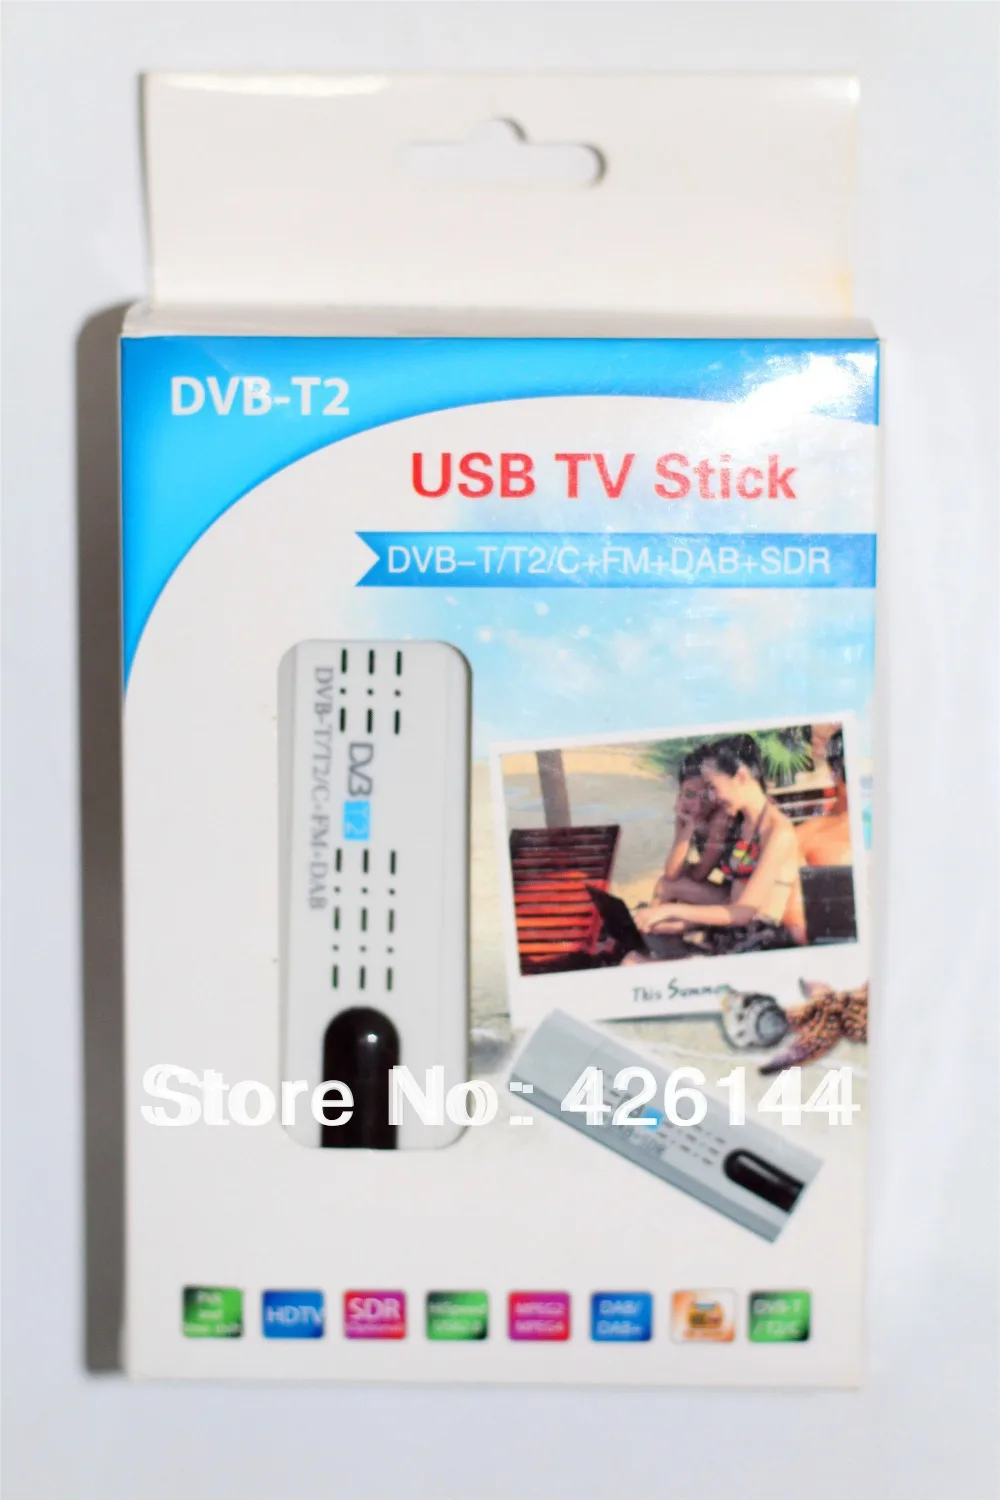 TV Stick Швеции USB 2.0 DVB-T2/T DVB-C ТВ-тюнер stick ключ для ПК/ноутбука 7/8 FM/dab+ SDR